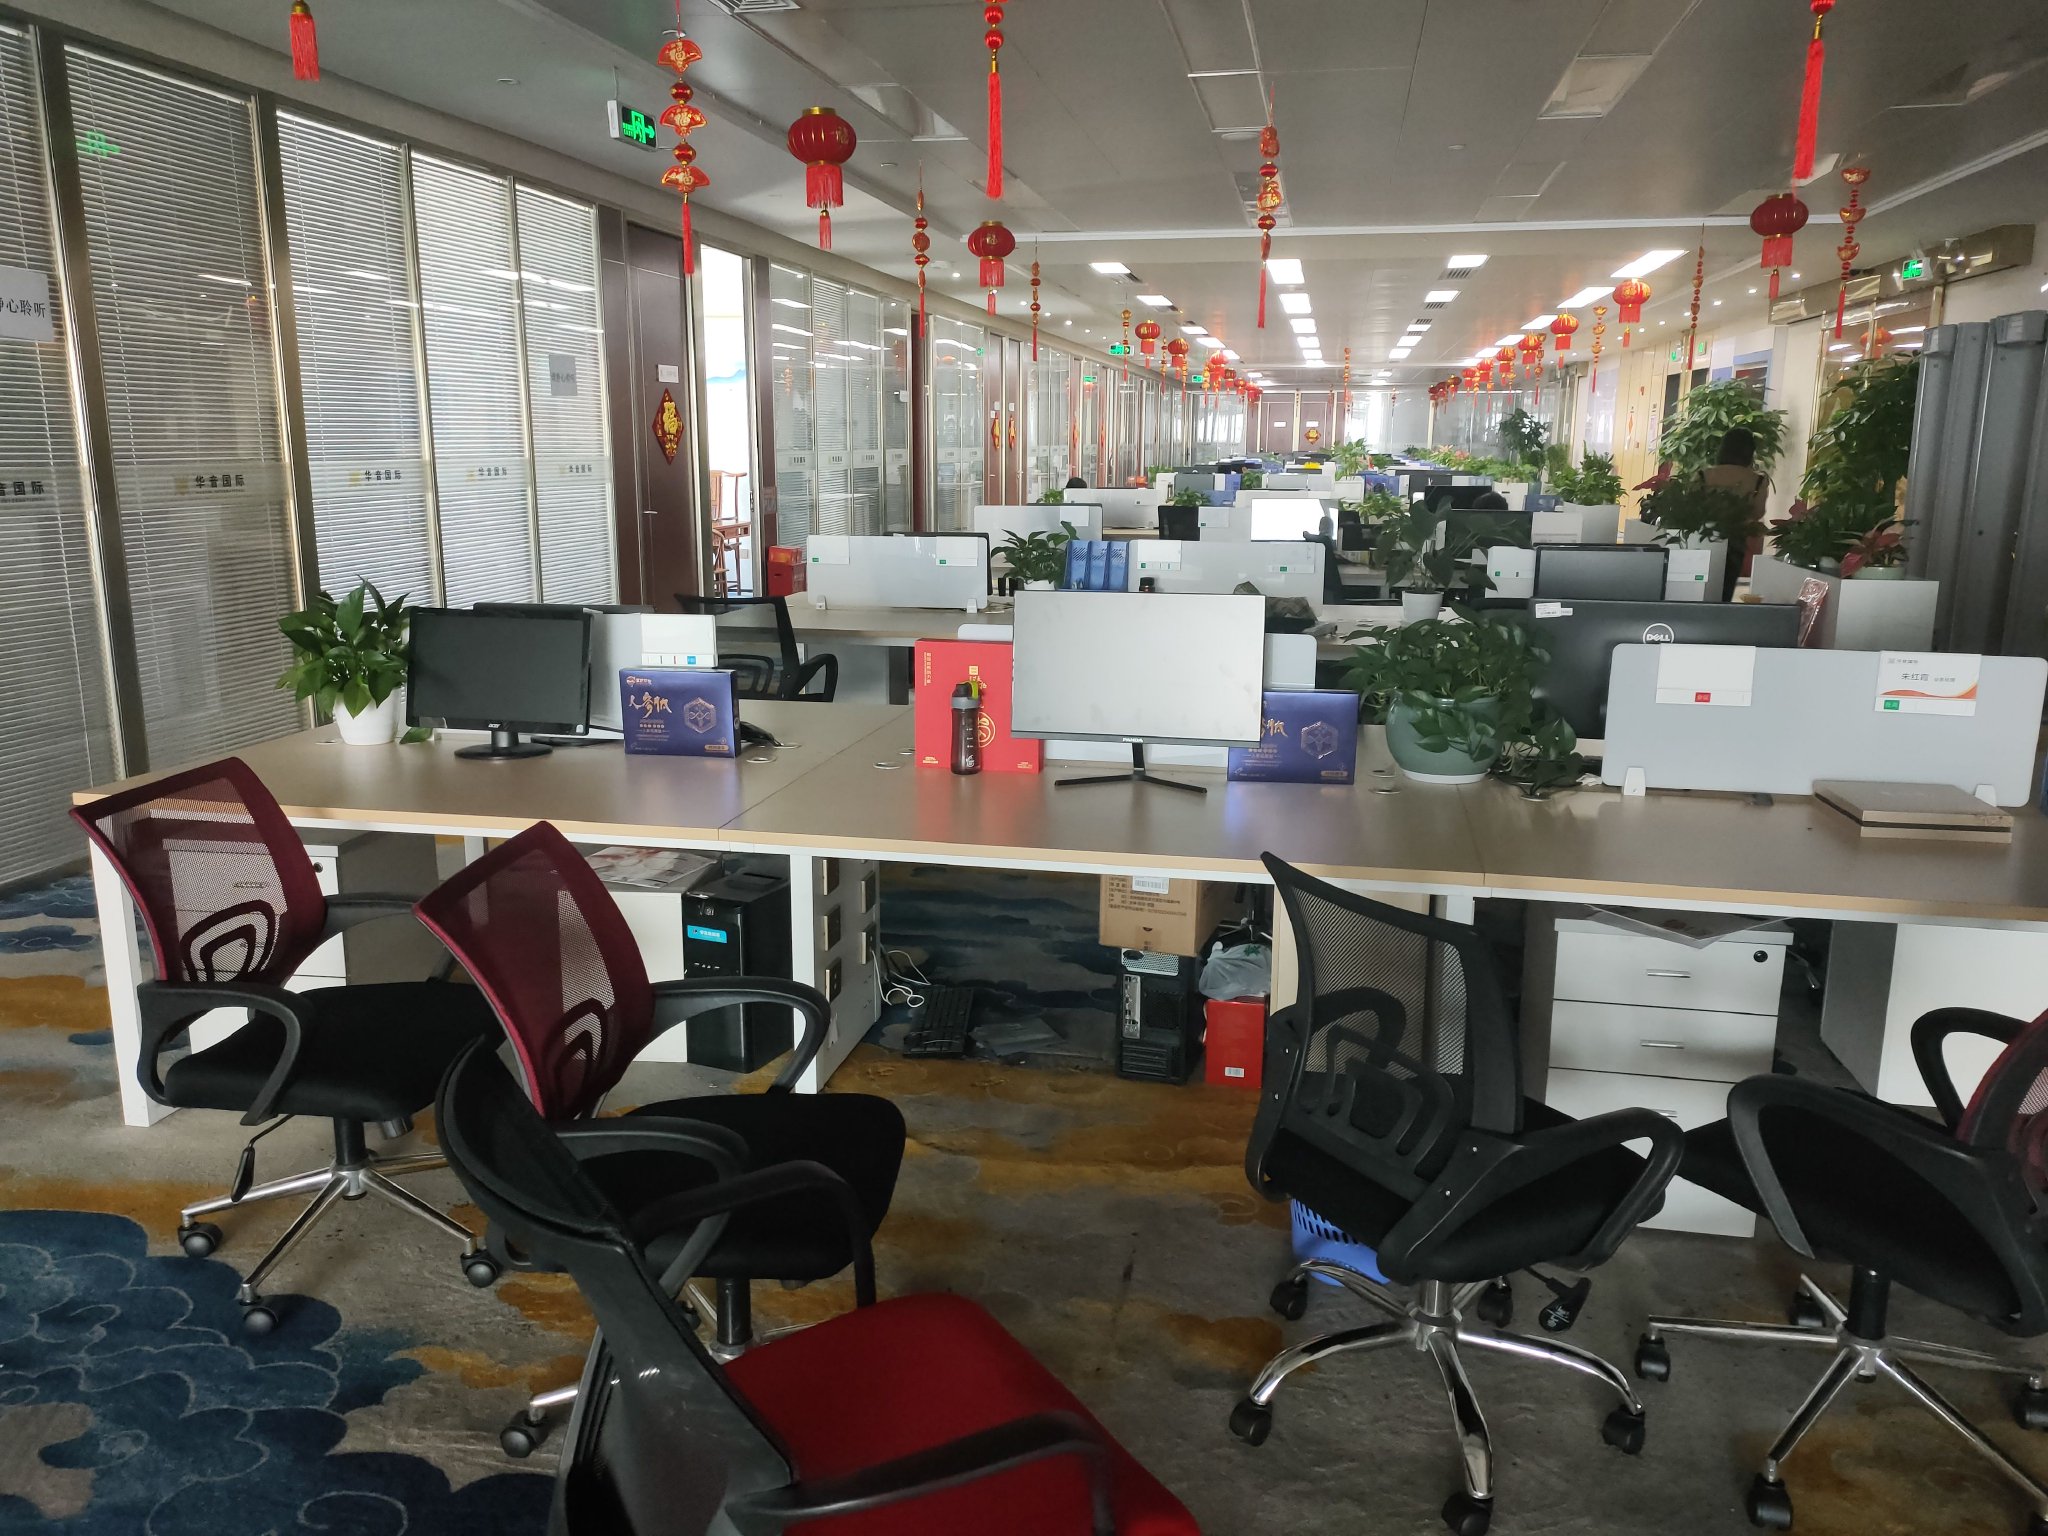 鼎益丰位于深圳的某办公场所，投资人告诉记者以前这里坐的全是工作人员（记者拍摄）